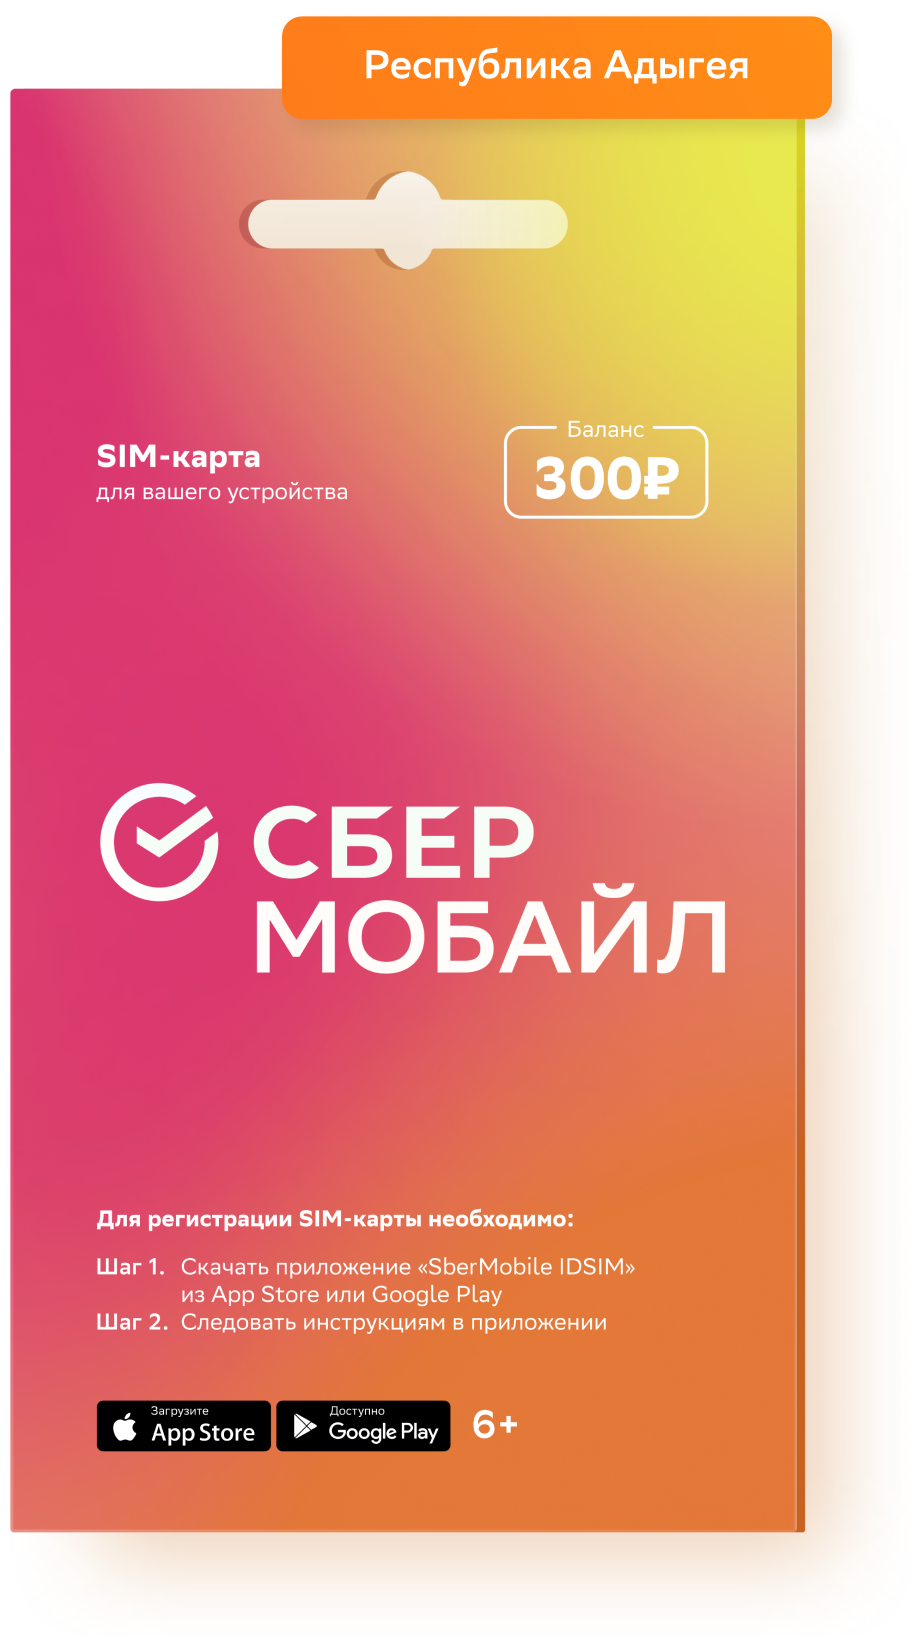 SIM-карта СберМобайл Баланс 300 рублей (Респ Адыгея)